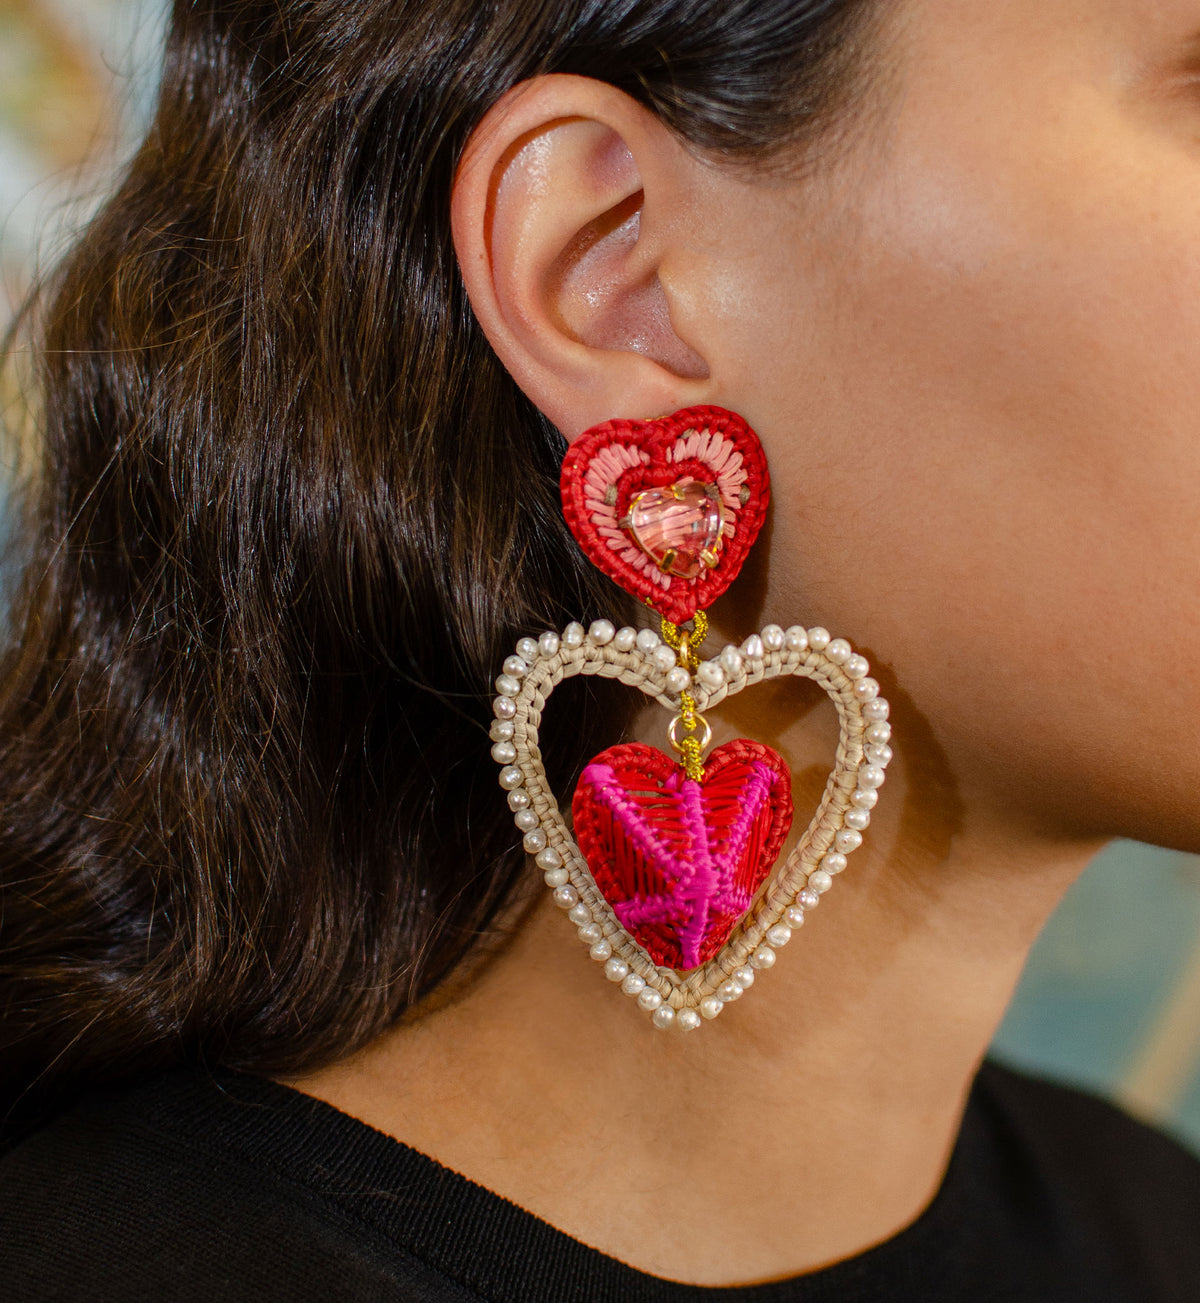 8 of Hearts Earrings